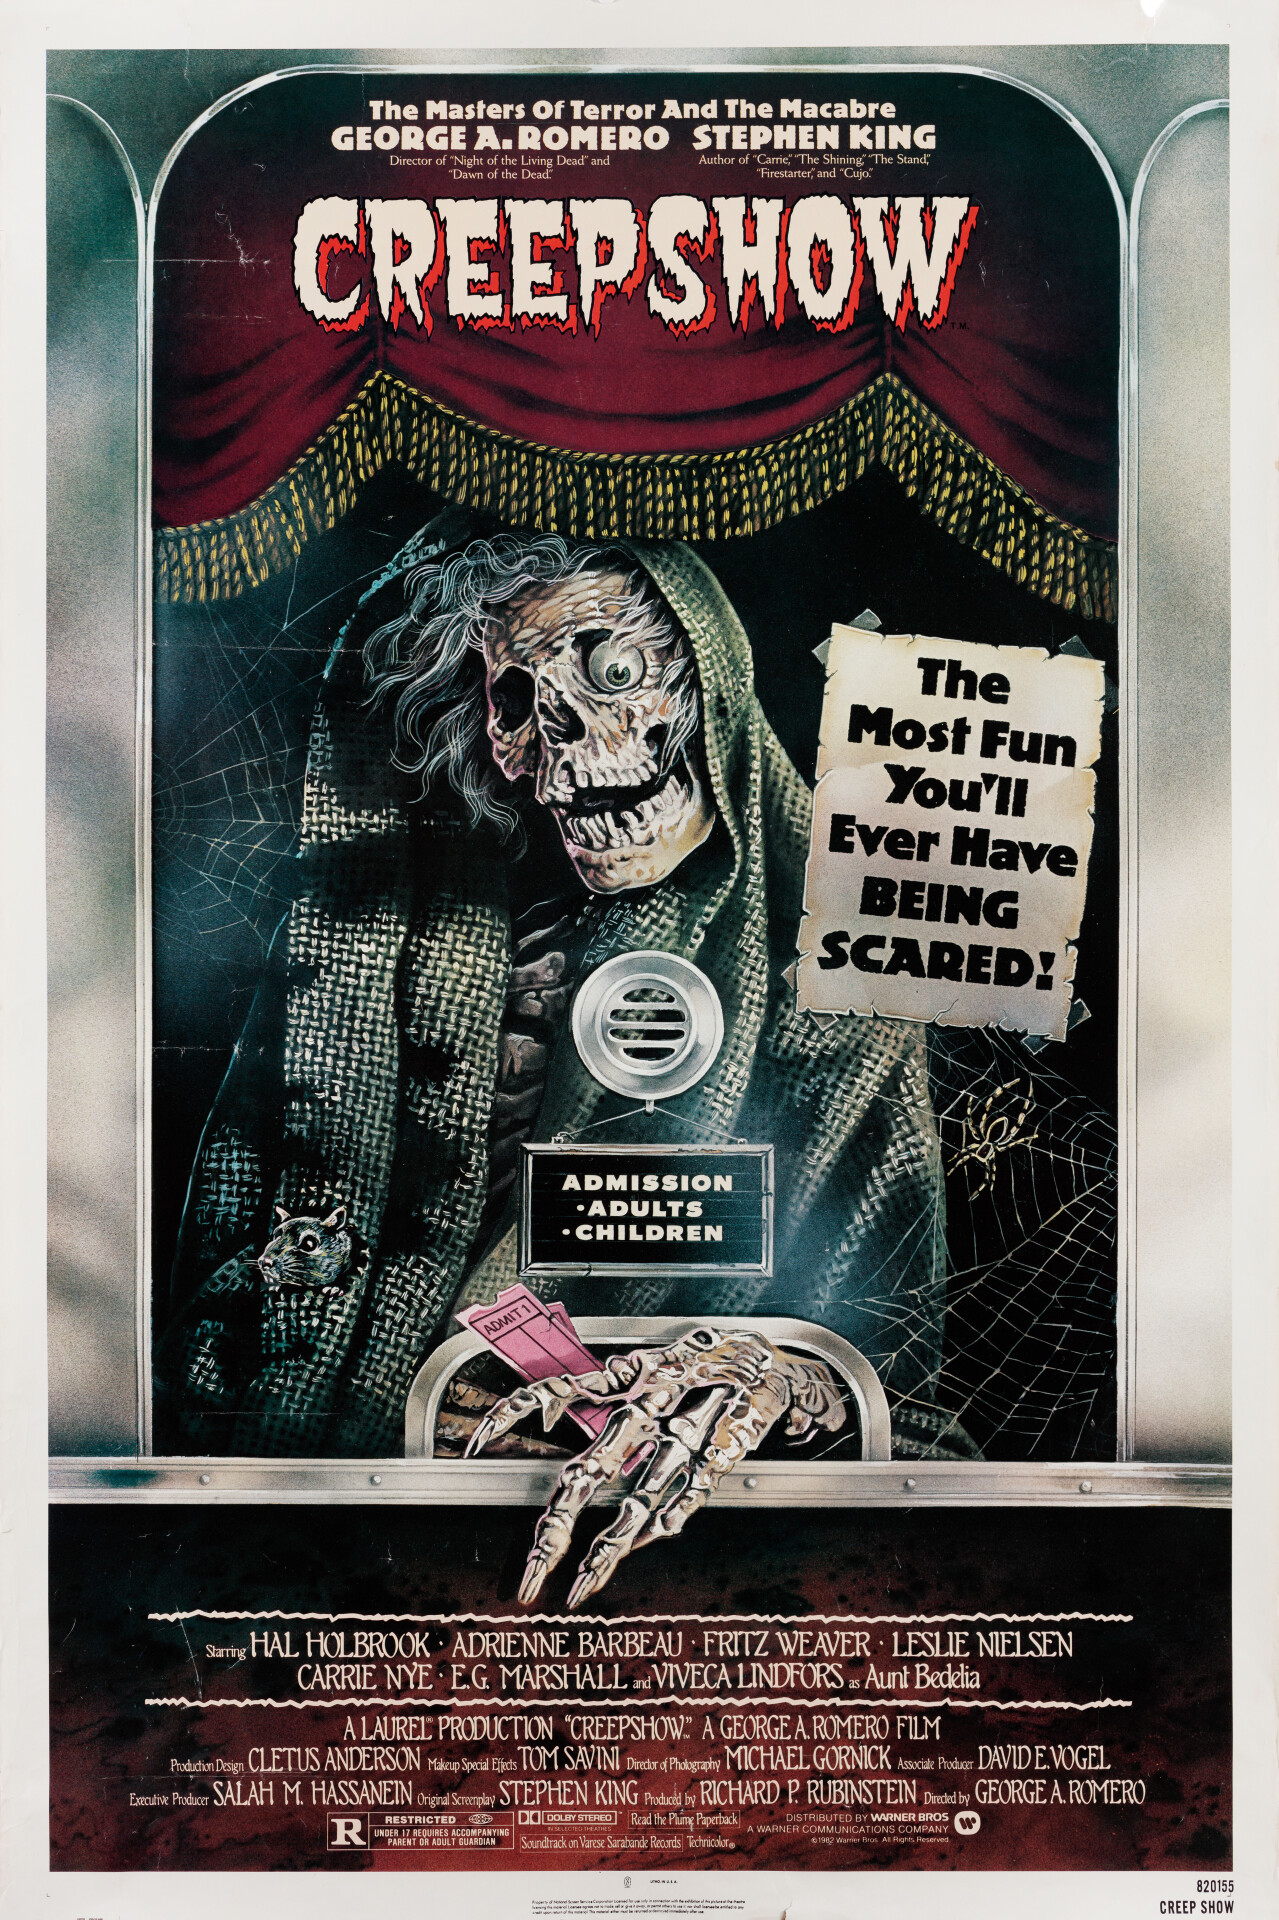 Калейдоскоп ужасов (Creepshow, 1982), режиссёр Джордж А. Ромеро, американский постер к фильму, автор Джоан Дэйли (ужасы, 1982 год)